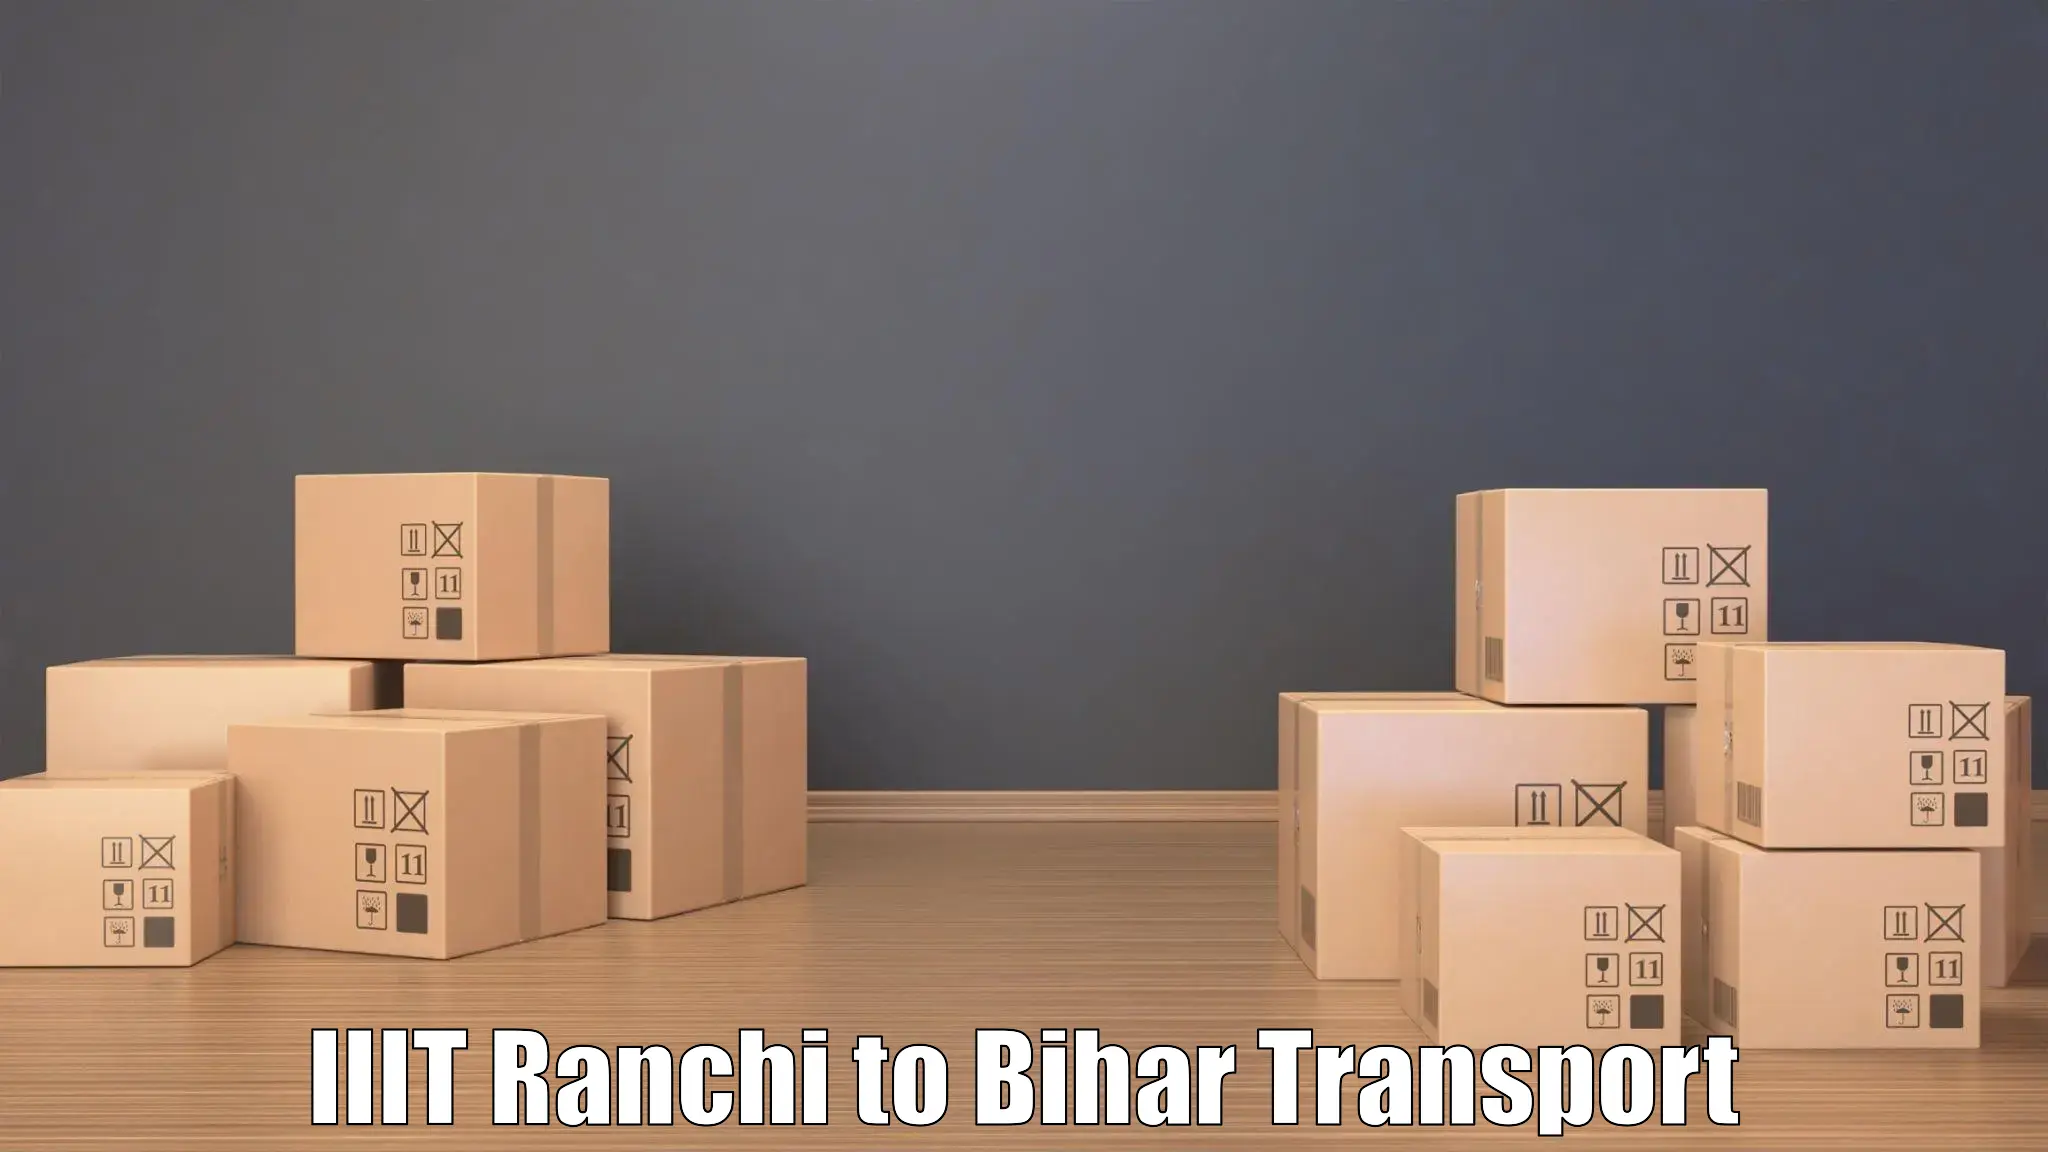 Bike transport service IIIT Ranchi to Bakhri